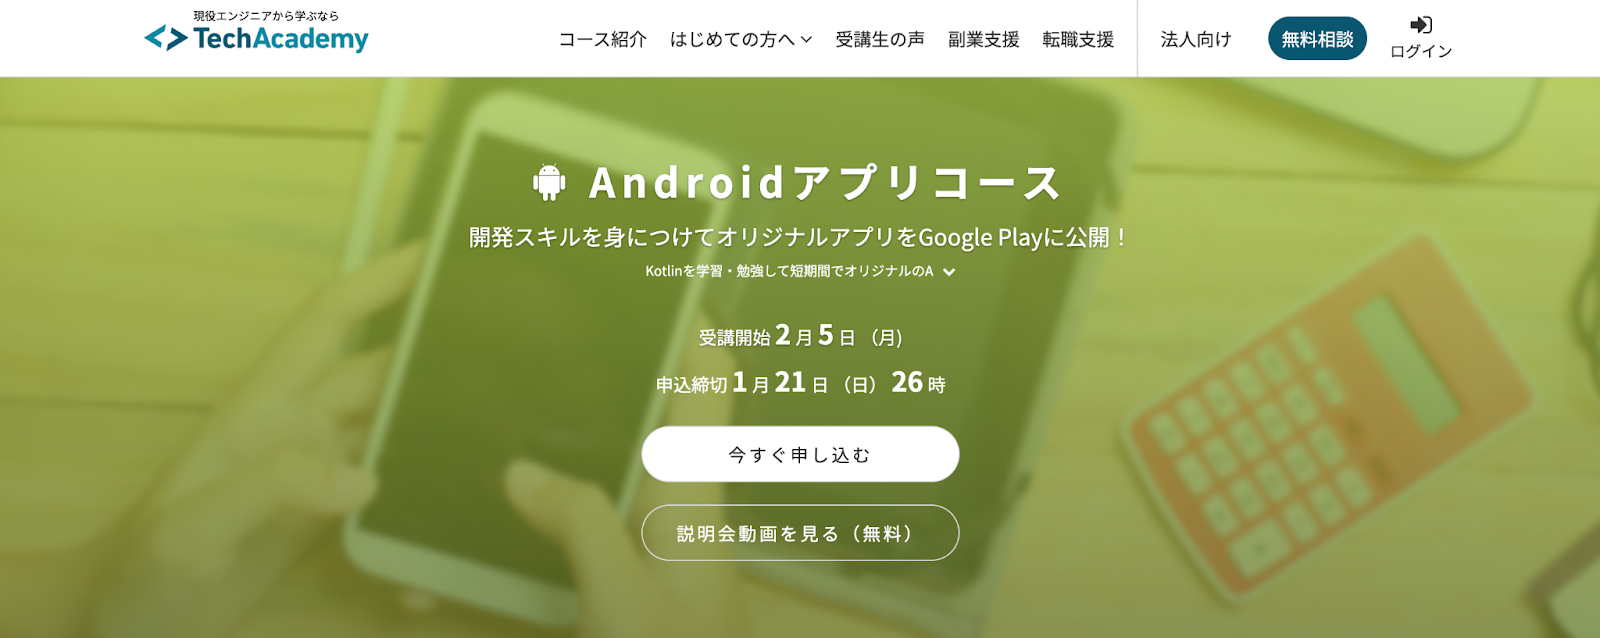 TechAcademy「Androidアプリコース」